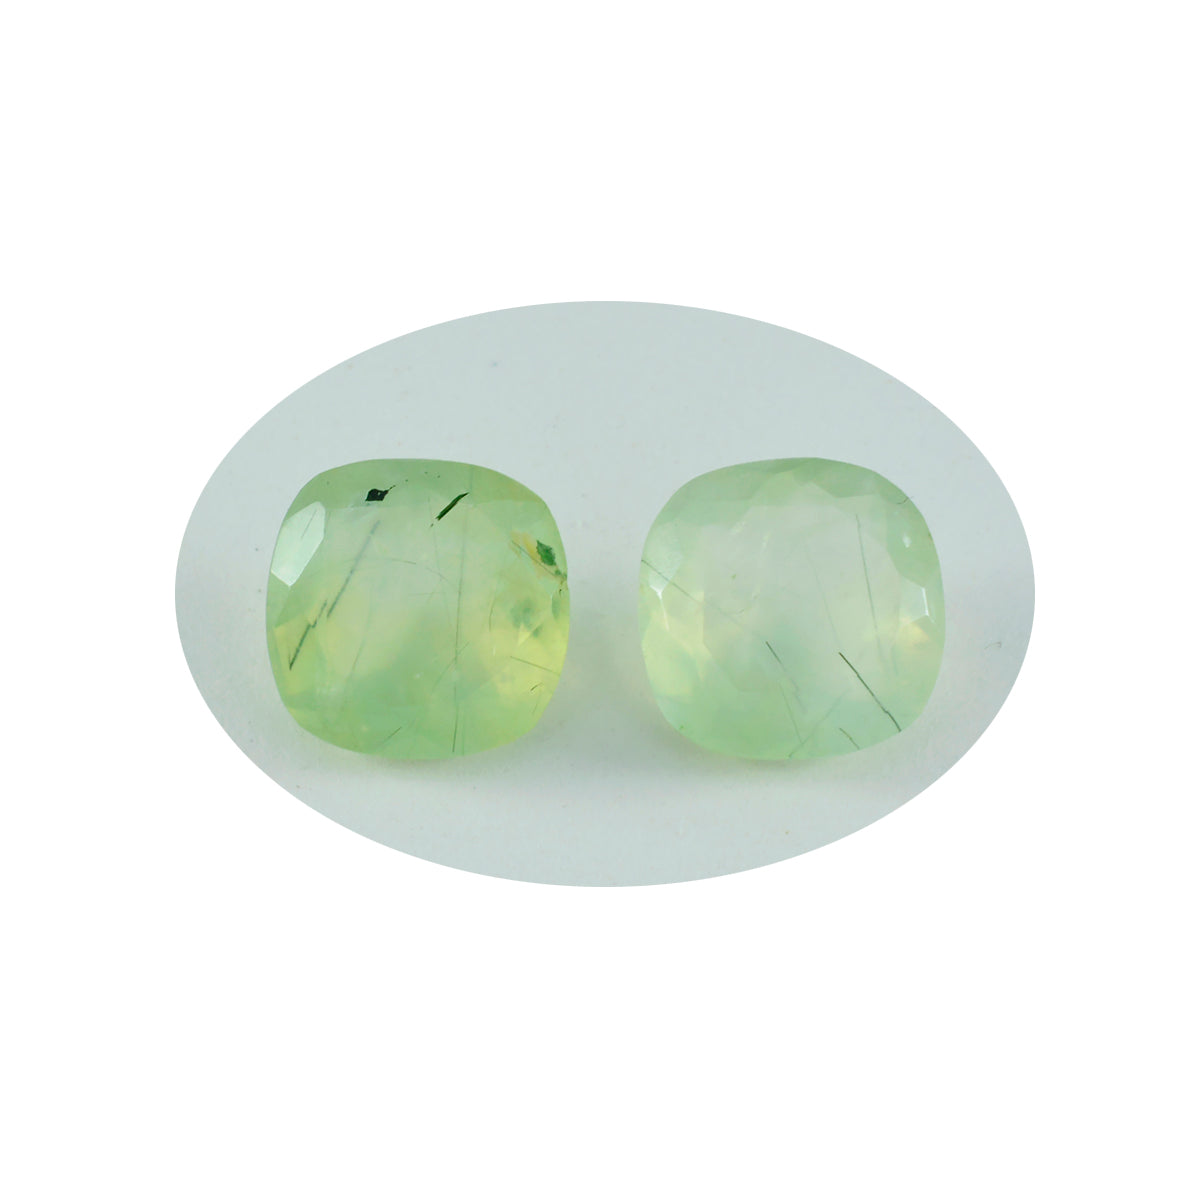 riyogems 1шт зеленый пренит граненый 11х11 мм в форме подушки привлекательное качество россыпной камень